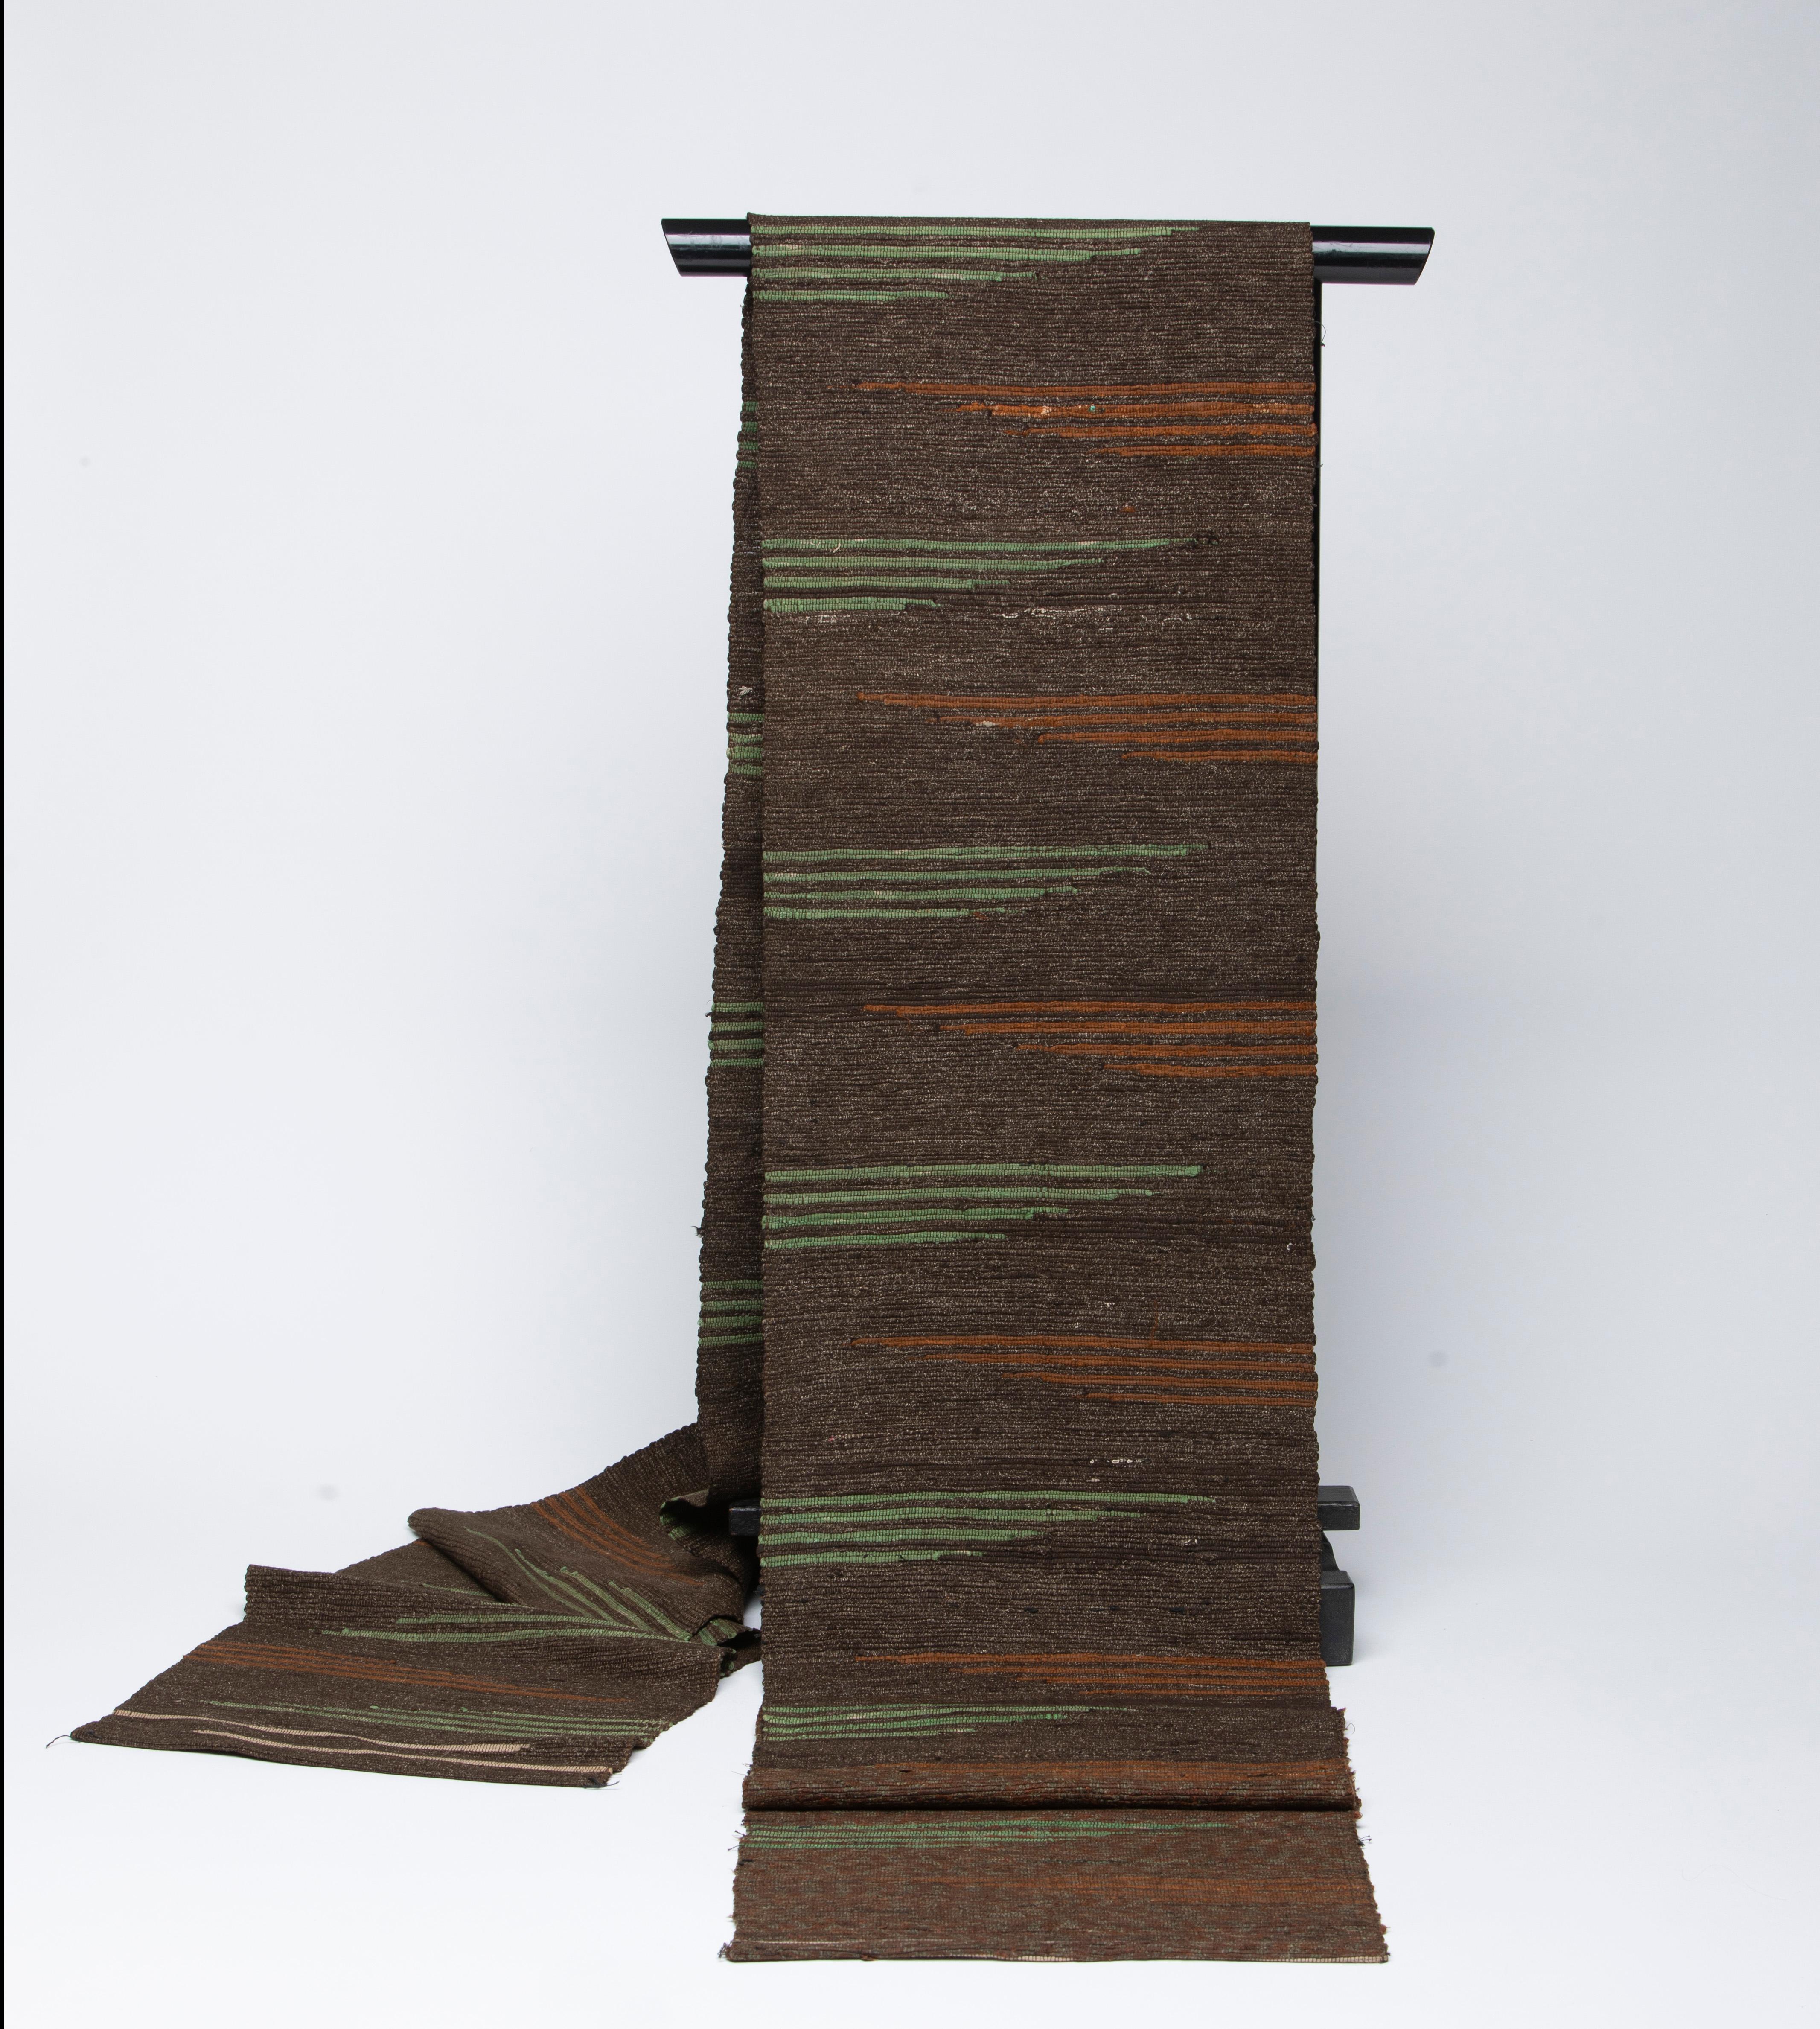 Obi (ceinture) en soie japonaise sur fond marron foncé avec des motifs rouille et vert sur toute la longueur.

Age - Fin de l'ère Meiji 
Bon état

Peut être utilisé comme suspension murale ou sur une table.

Dimensions réelles du textile :   130